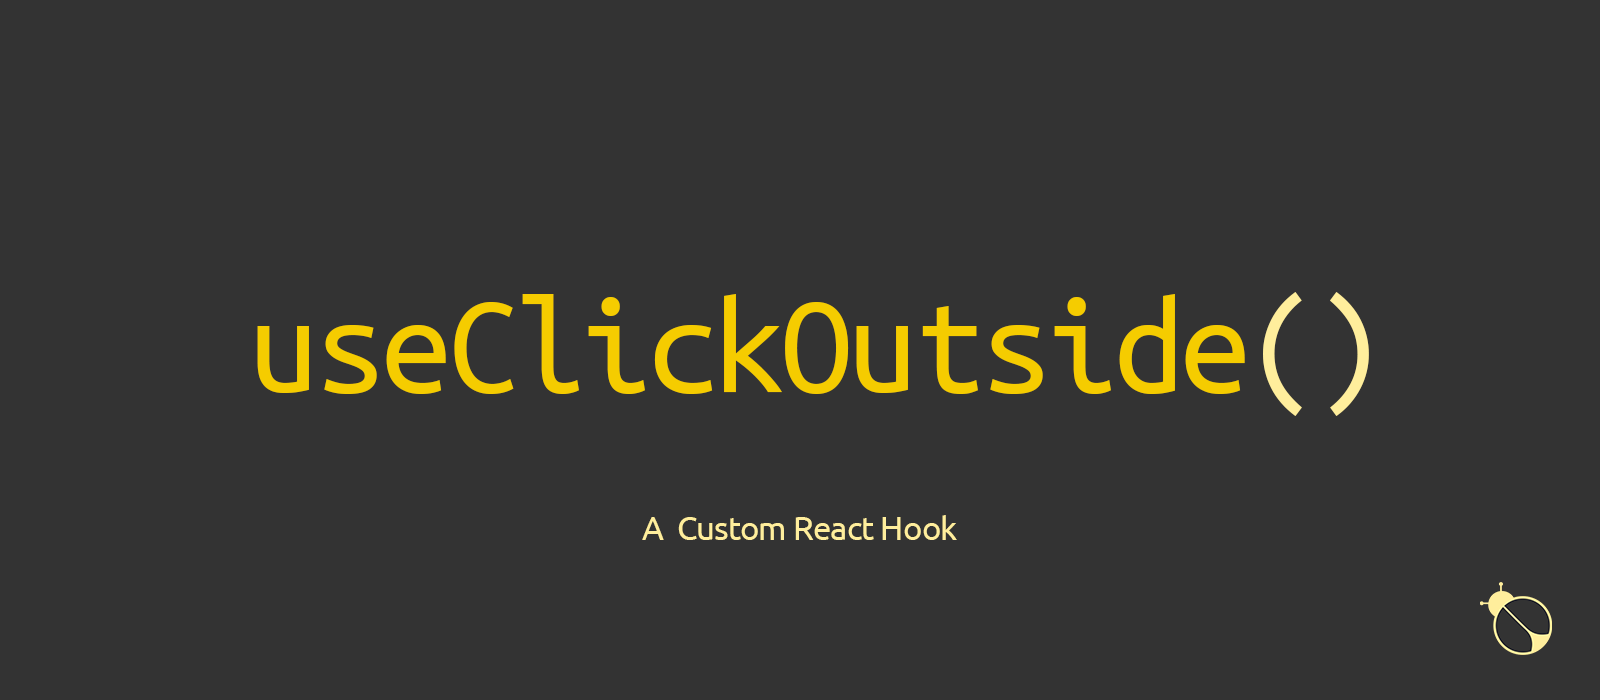 useClickOutside(): A Custom React Hook to Intercept Clicks Falling Outside an Element